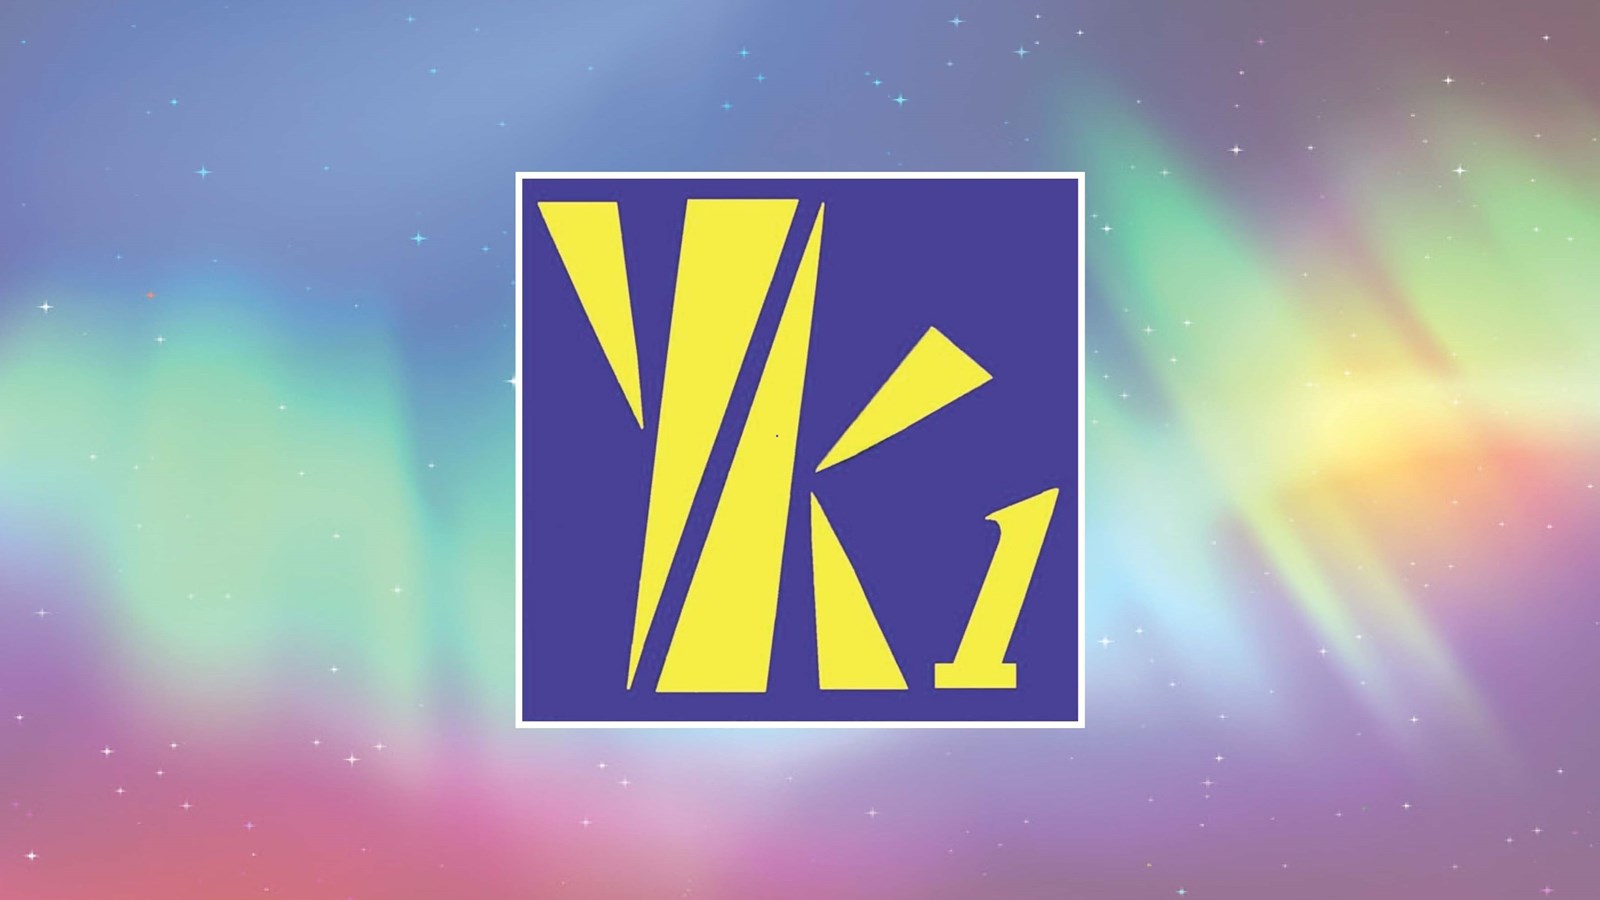 yk1 logo on aurora